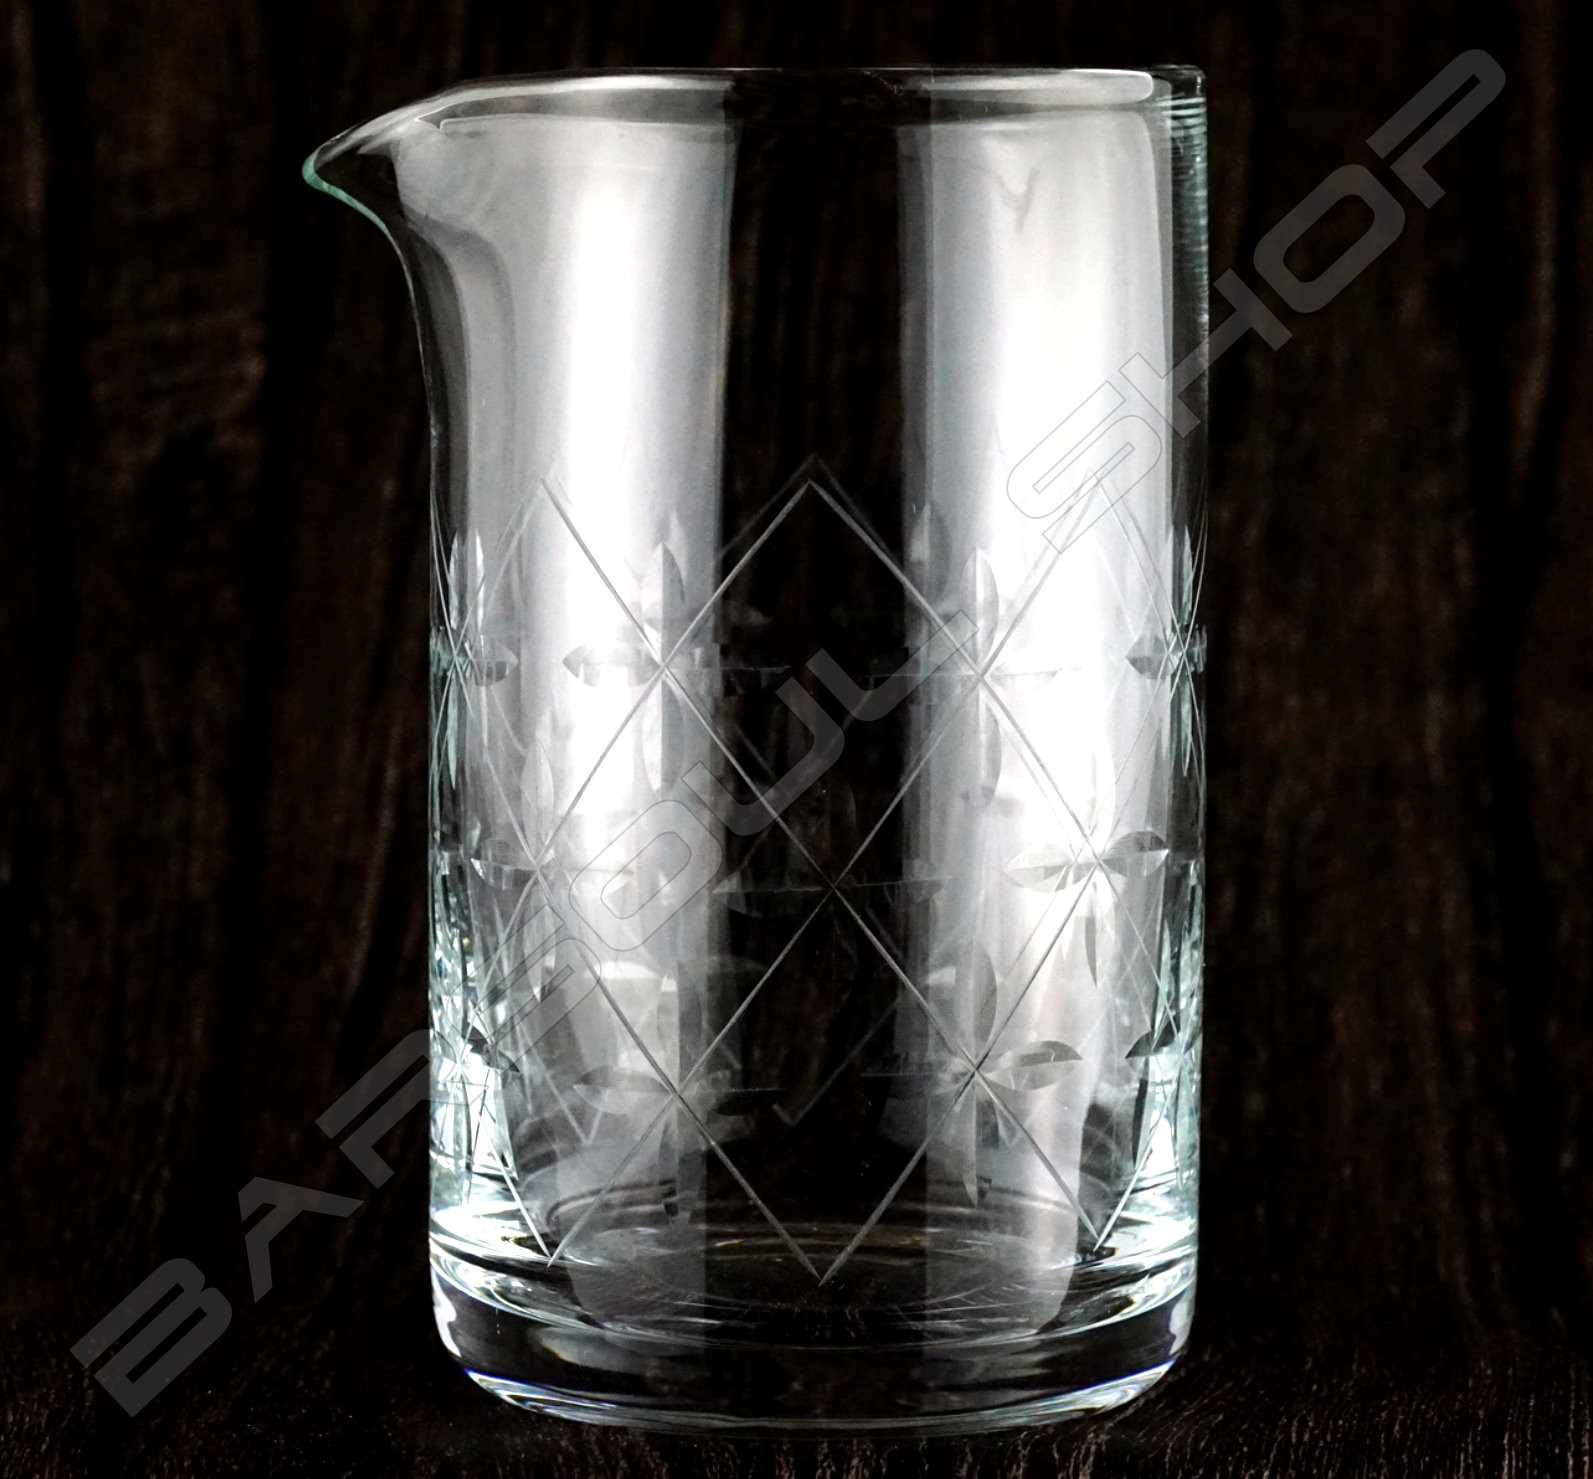 水晶攪拌杯 時尚款630ml Crystal mixing glass (Fashioned) H15cm